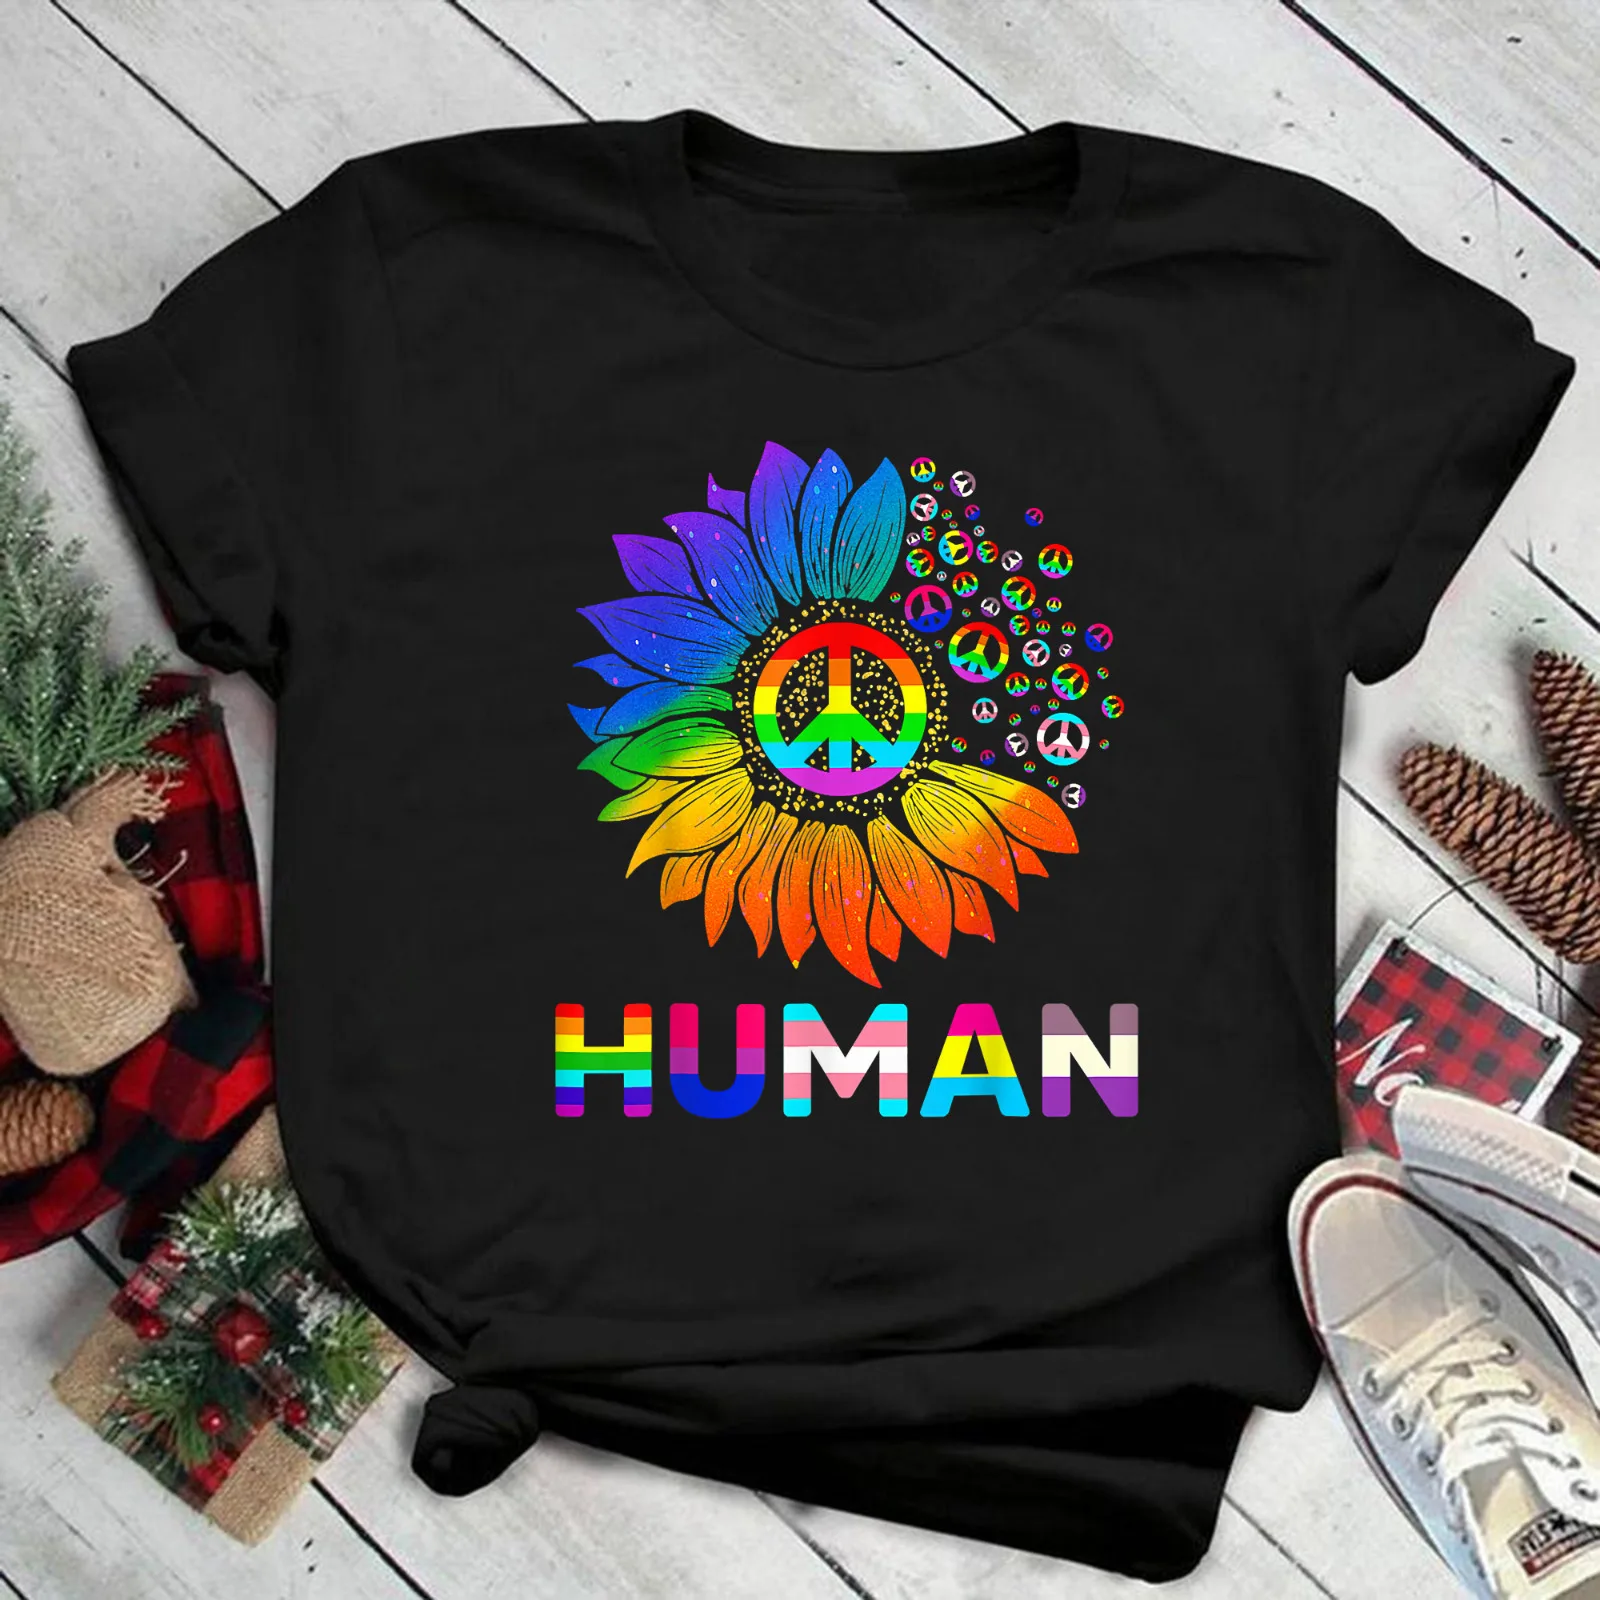 Человеческий Подсолнух, яркий флаг, гей гордость, футболка ЛГБТ, фотография  | AliExpress